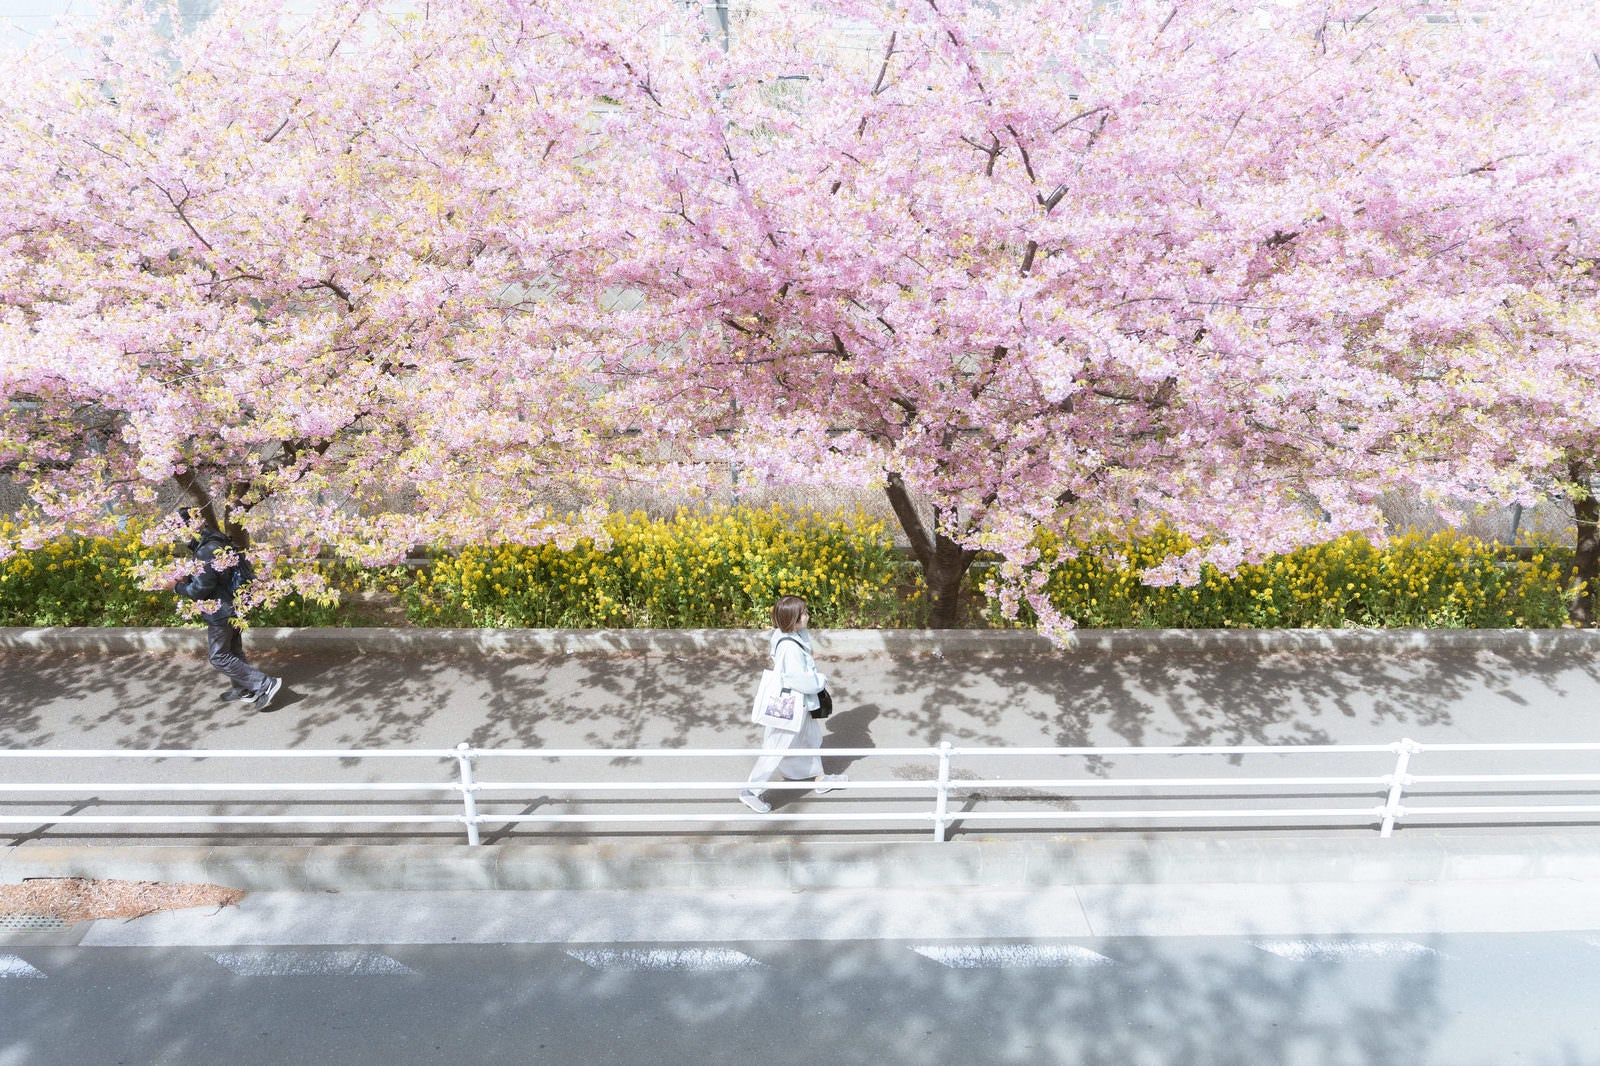 「桜並木の下を散歩する女性」の写真